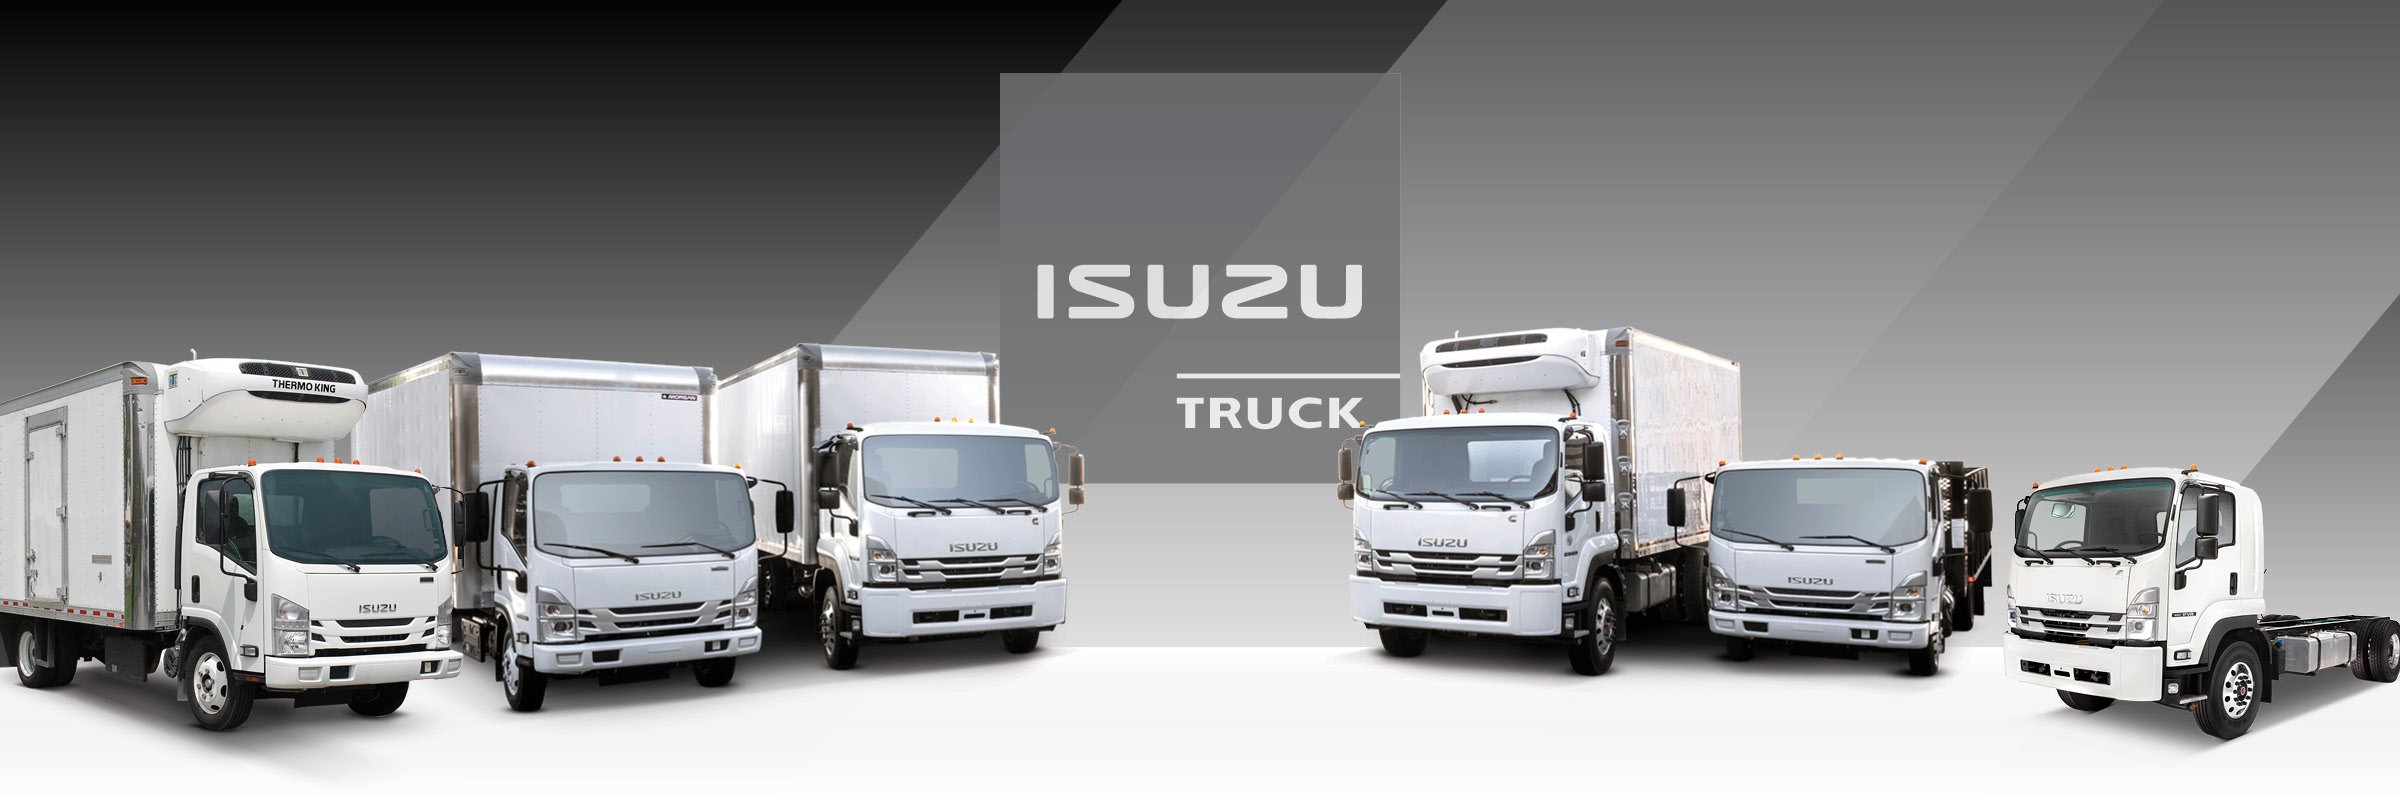 Isuzu Truck lineup | Isuzu Trucks | Isuzu Commercial Trucks